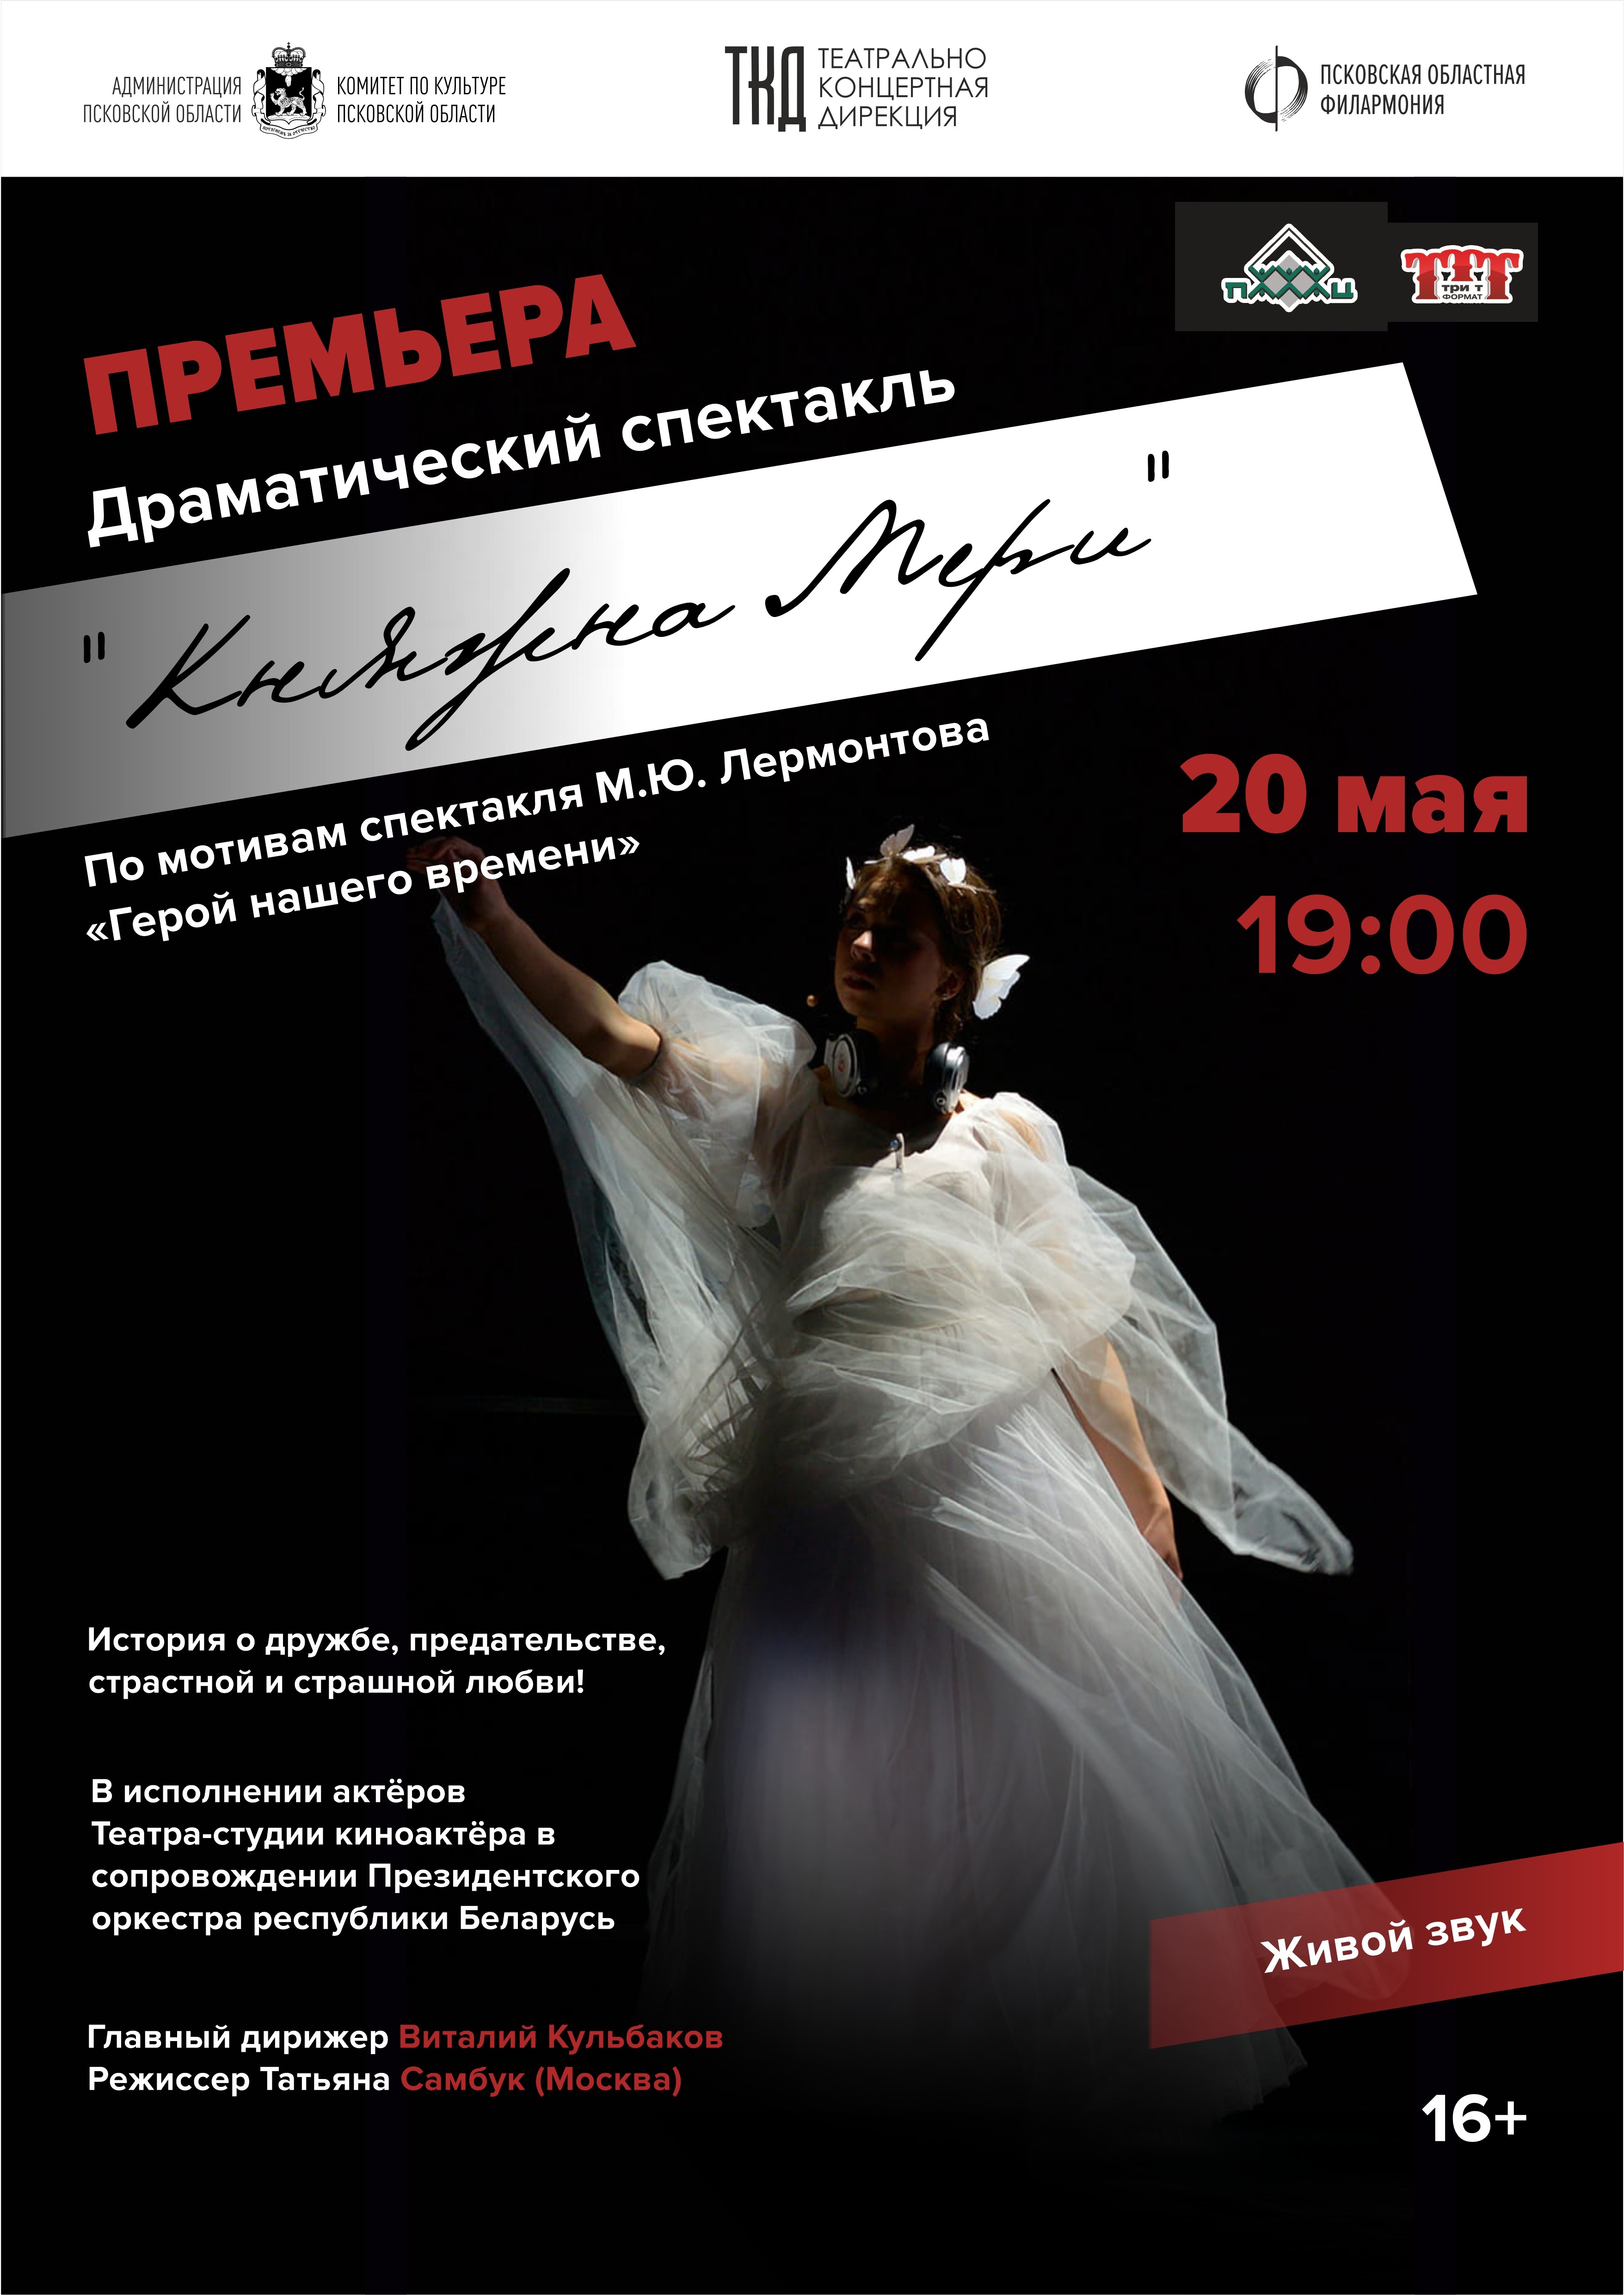 Гастроли творческого коллектива Республики Беларусь – главное театральное событие мая в Псковской области!